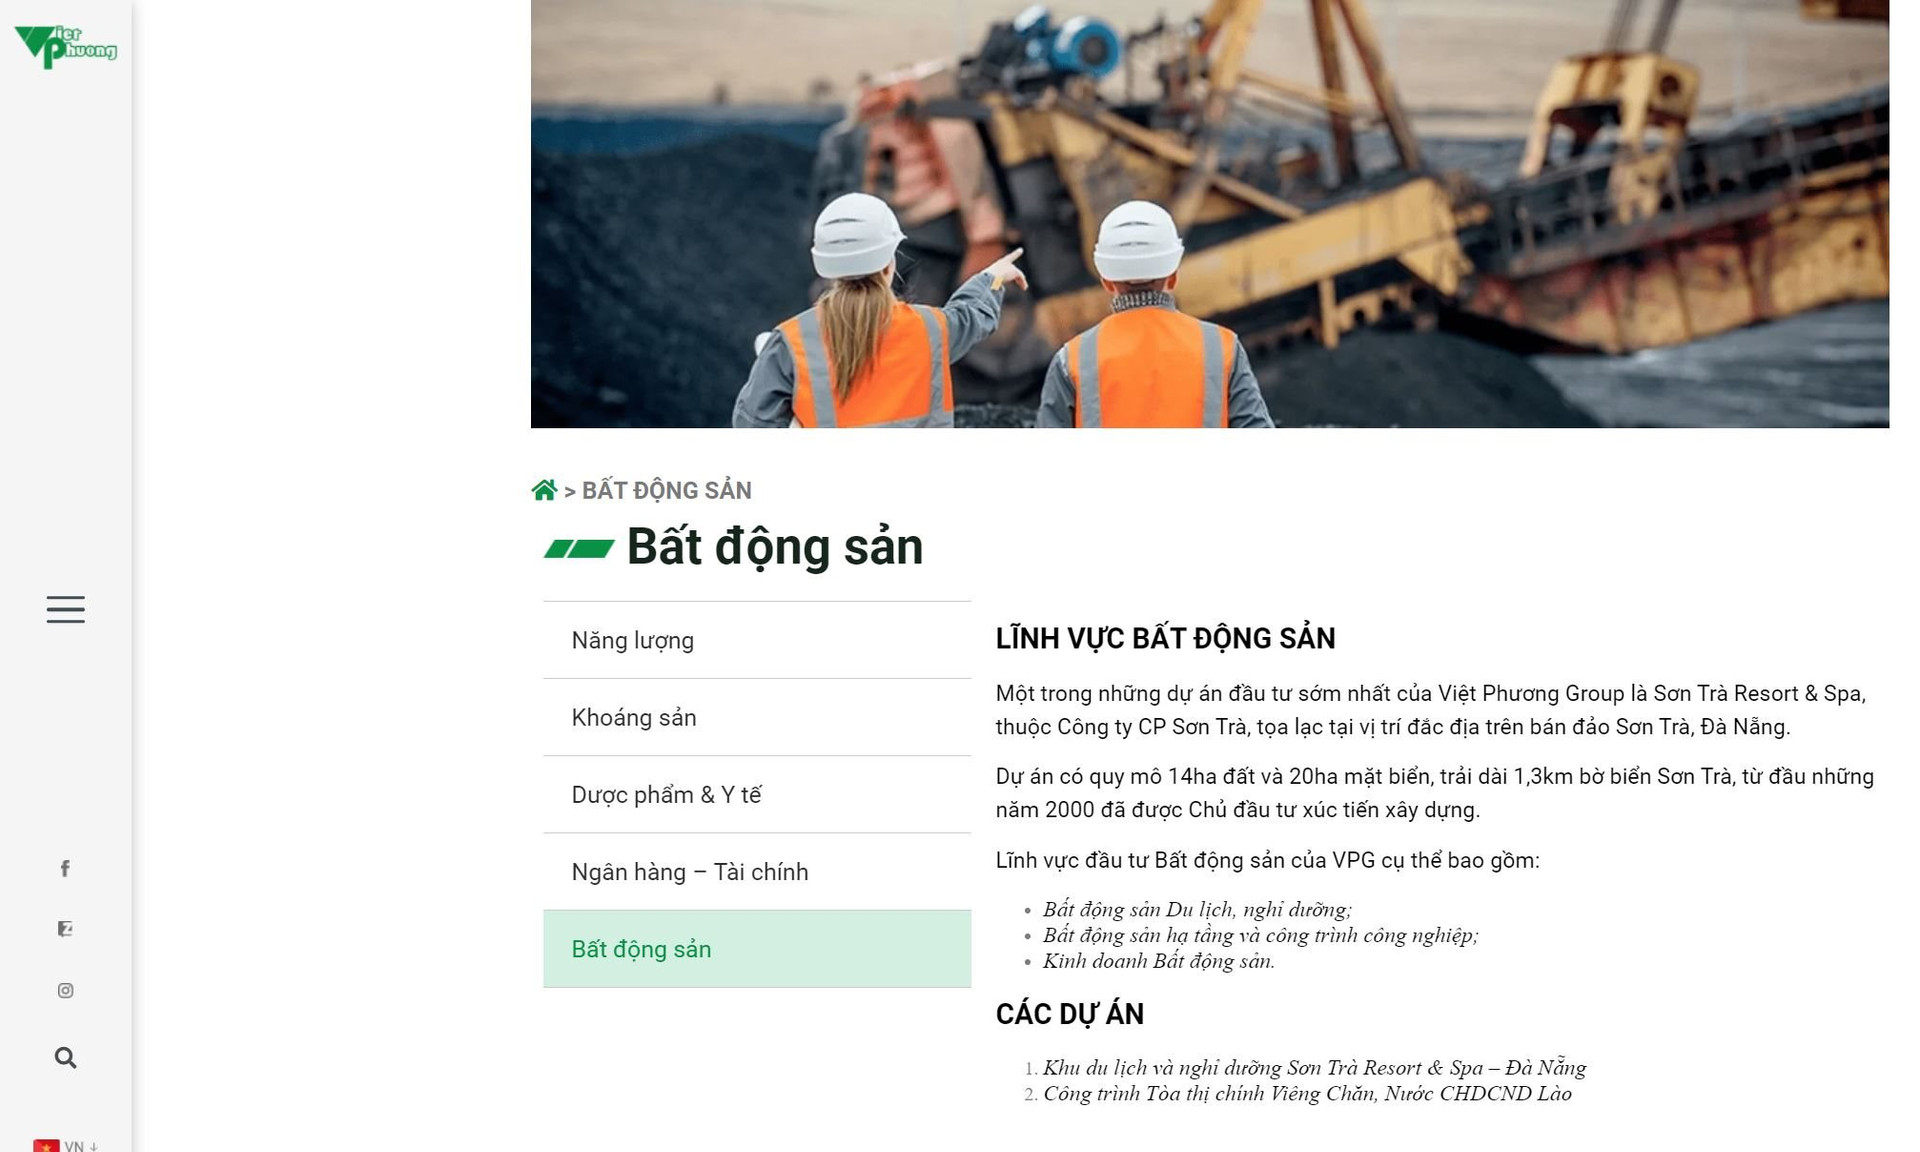 Hé lộ về ngân hàng nhận thế chấp hàng loạt tài sản liên quan đến dự án Sơn Trà Resort & Spa của Việt Phương Group